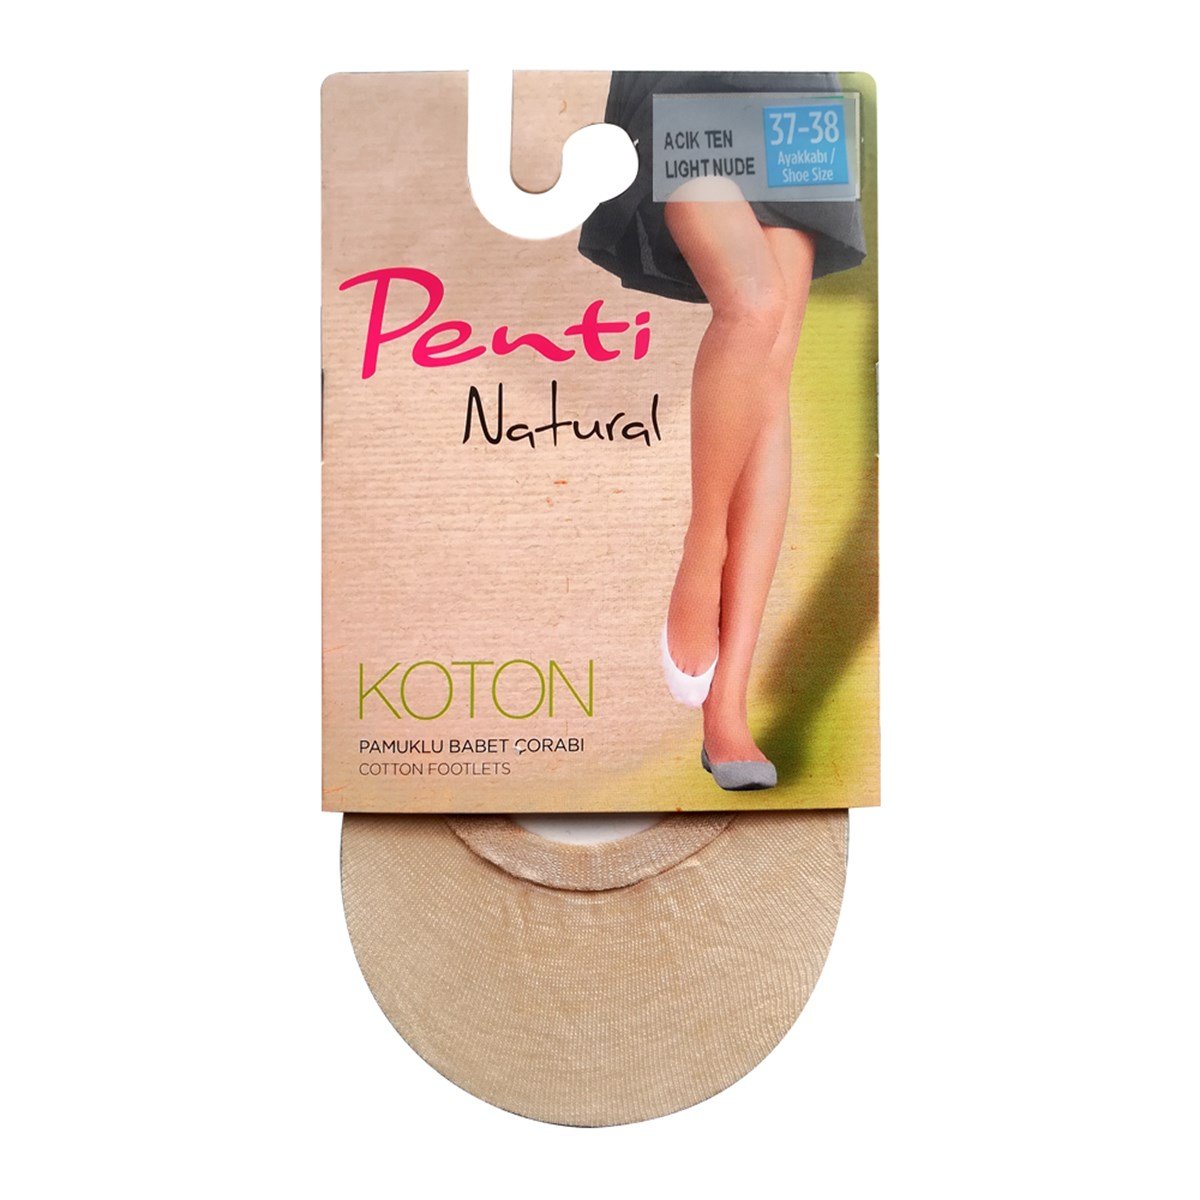 Penti Natural Koton Babet Çorabı Açık Ten 37-38 - Platin